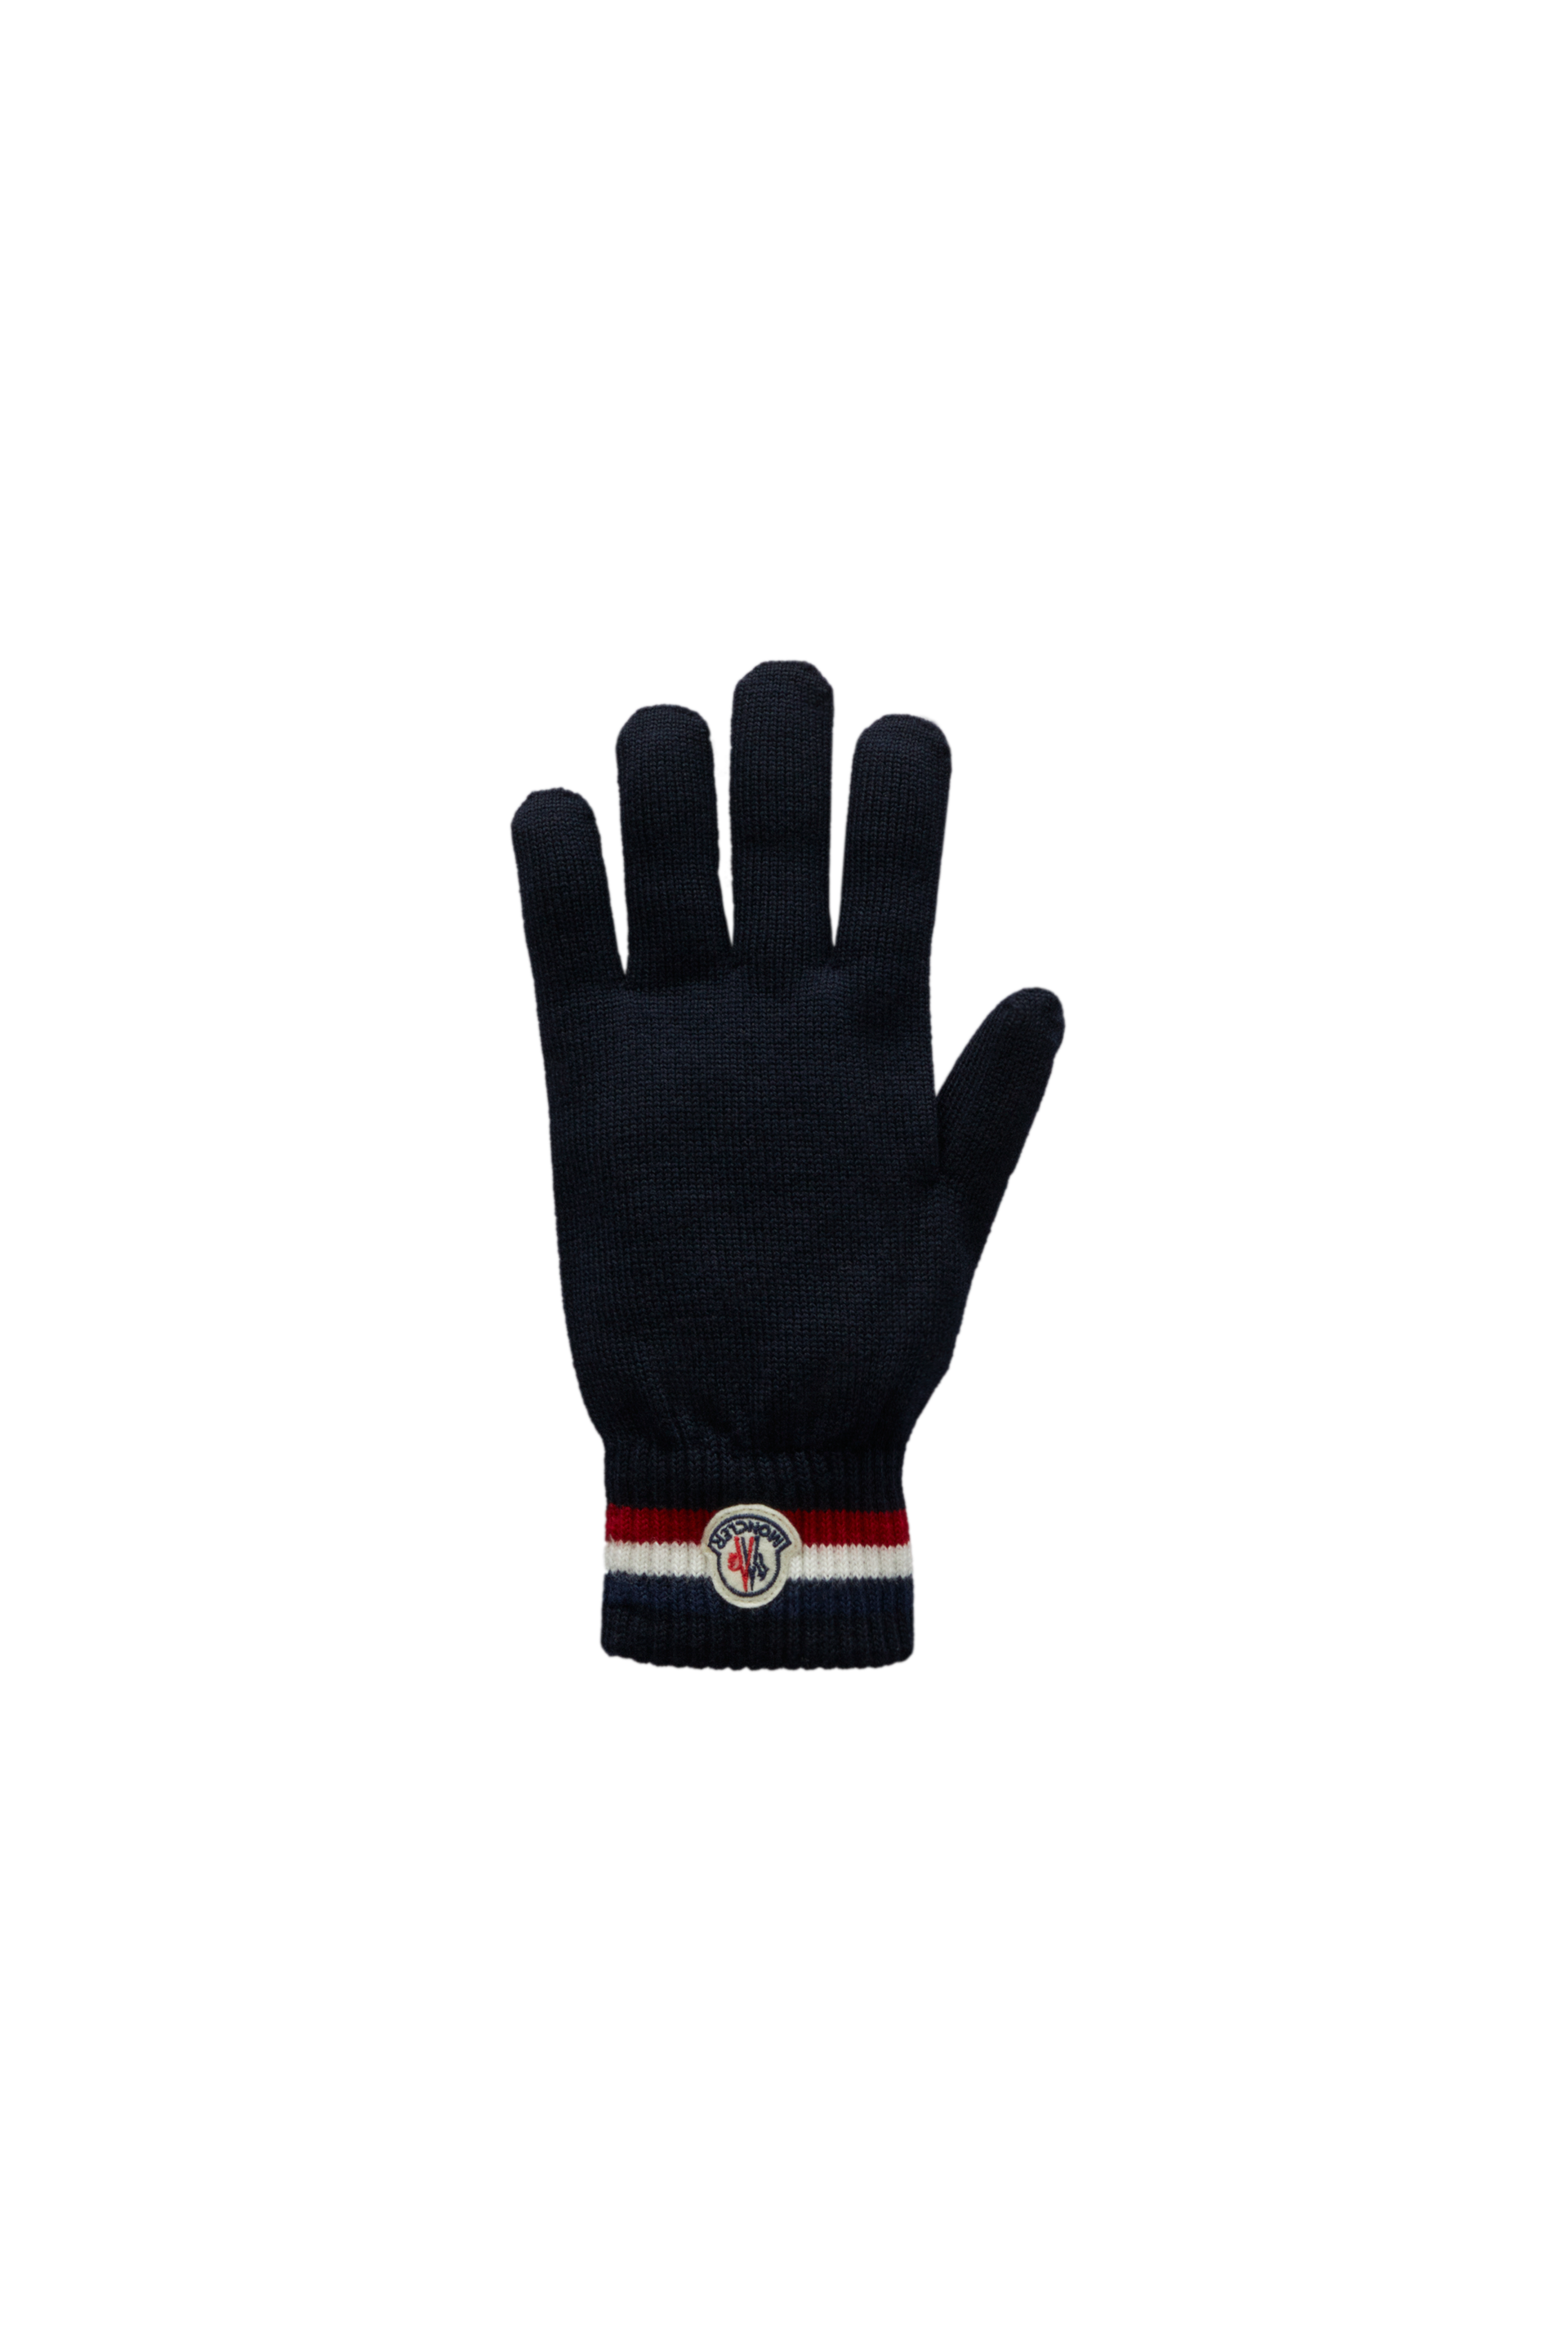 Moncler Collection Tricolour Knit Gloves Black Size M